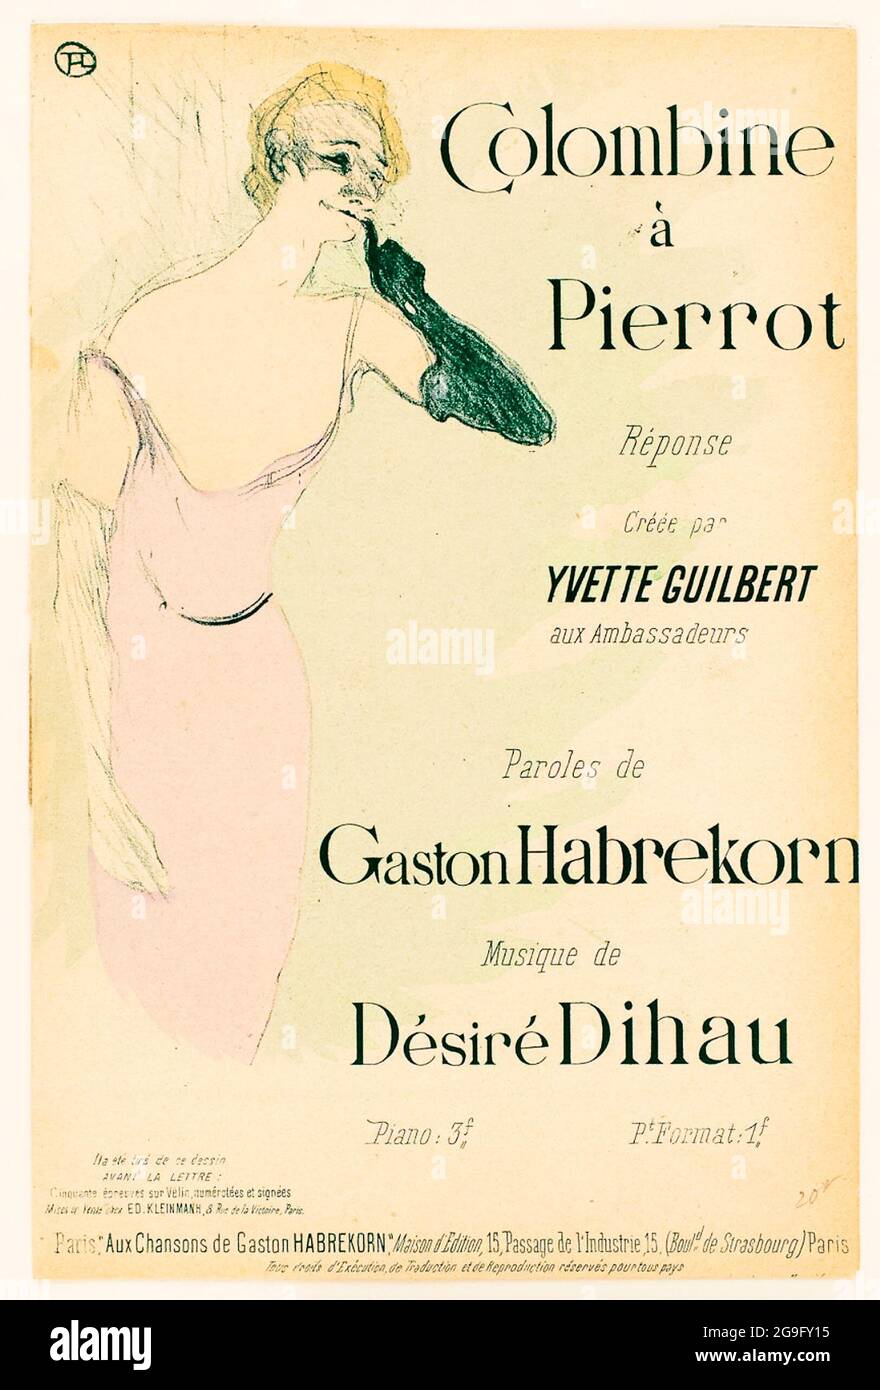 Henri de Toulouse-Lautrec, Yvette Guilbert, dans, Colombine à Pierrot, Poster, 1894 Stockfoto